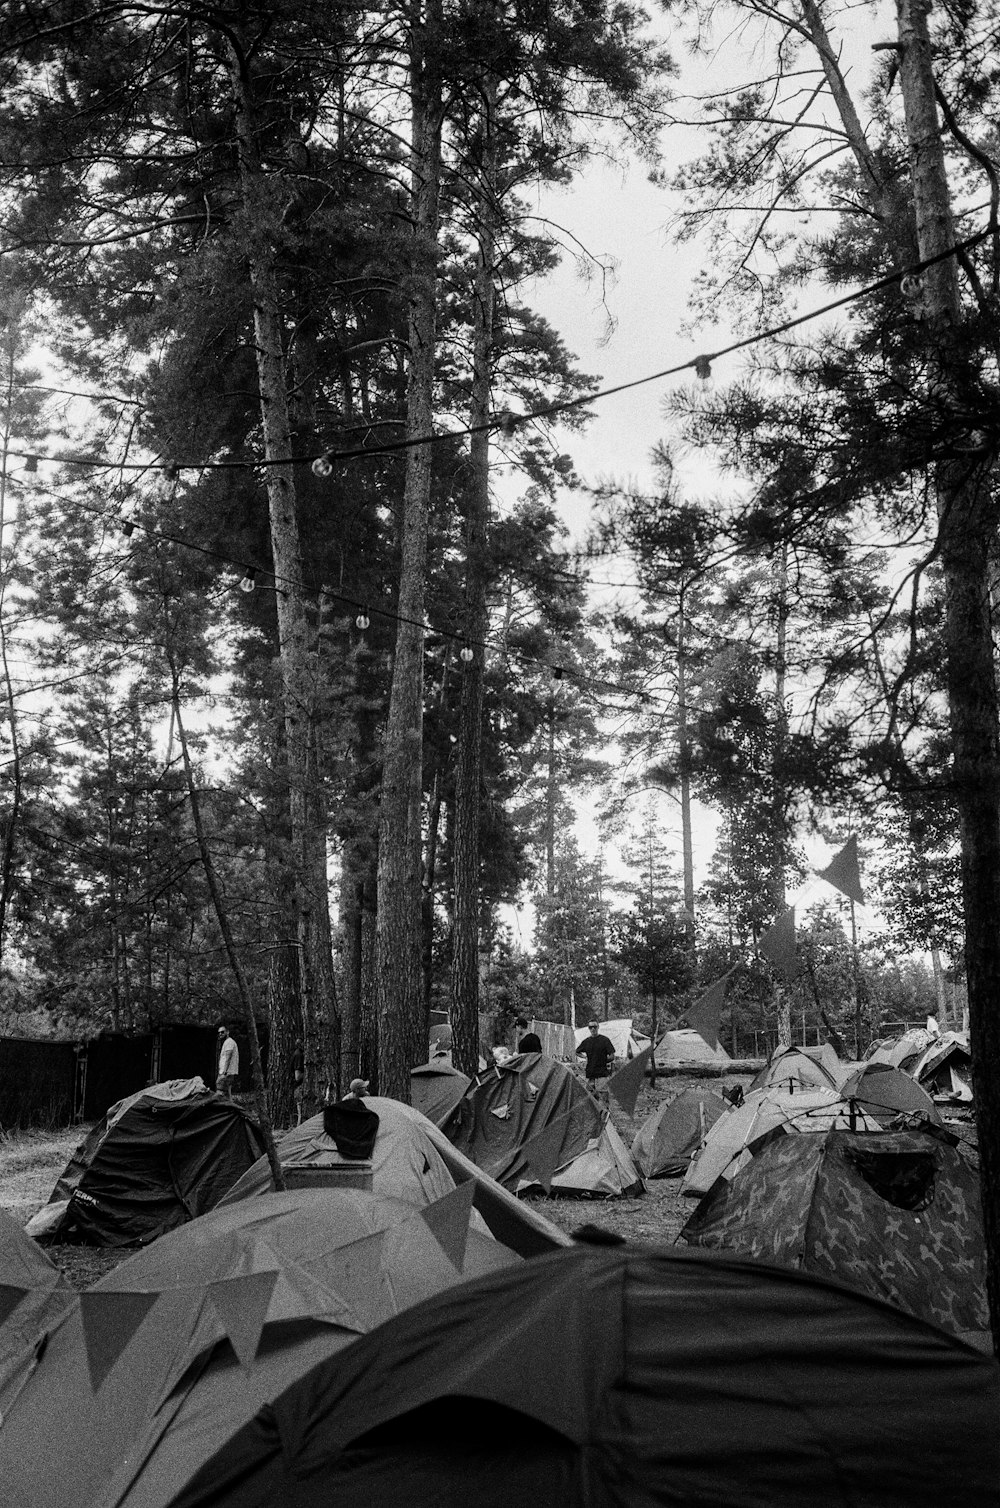 foto in scala di grigi di persone sedute su sedie da campeggio nella foresta